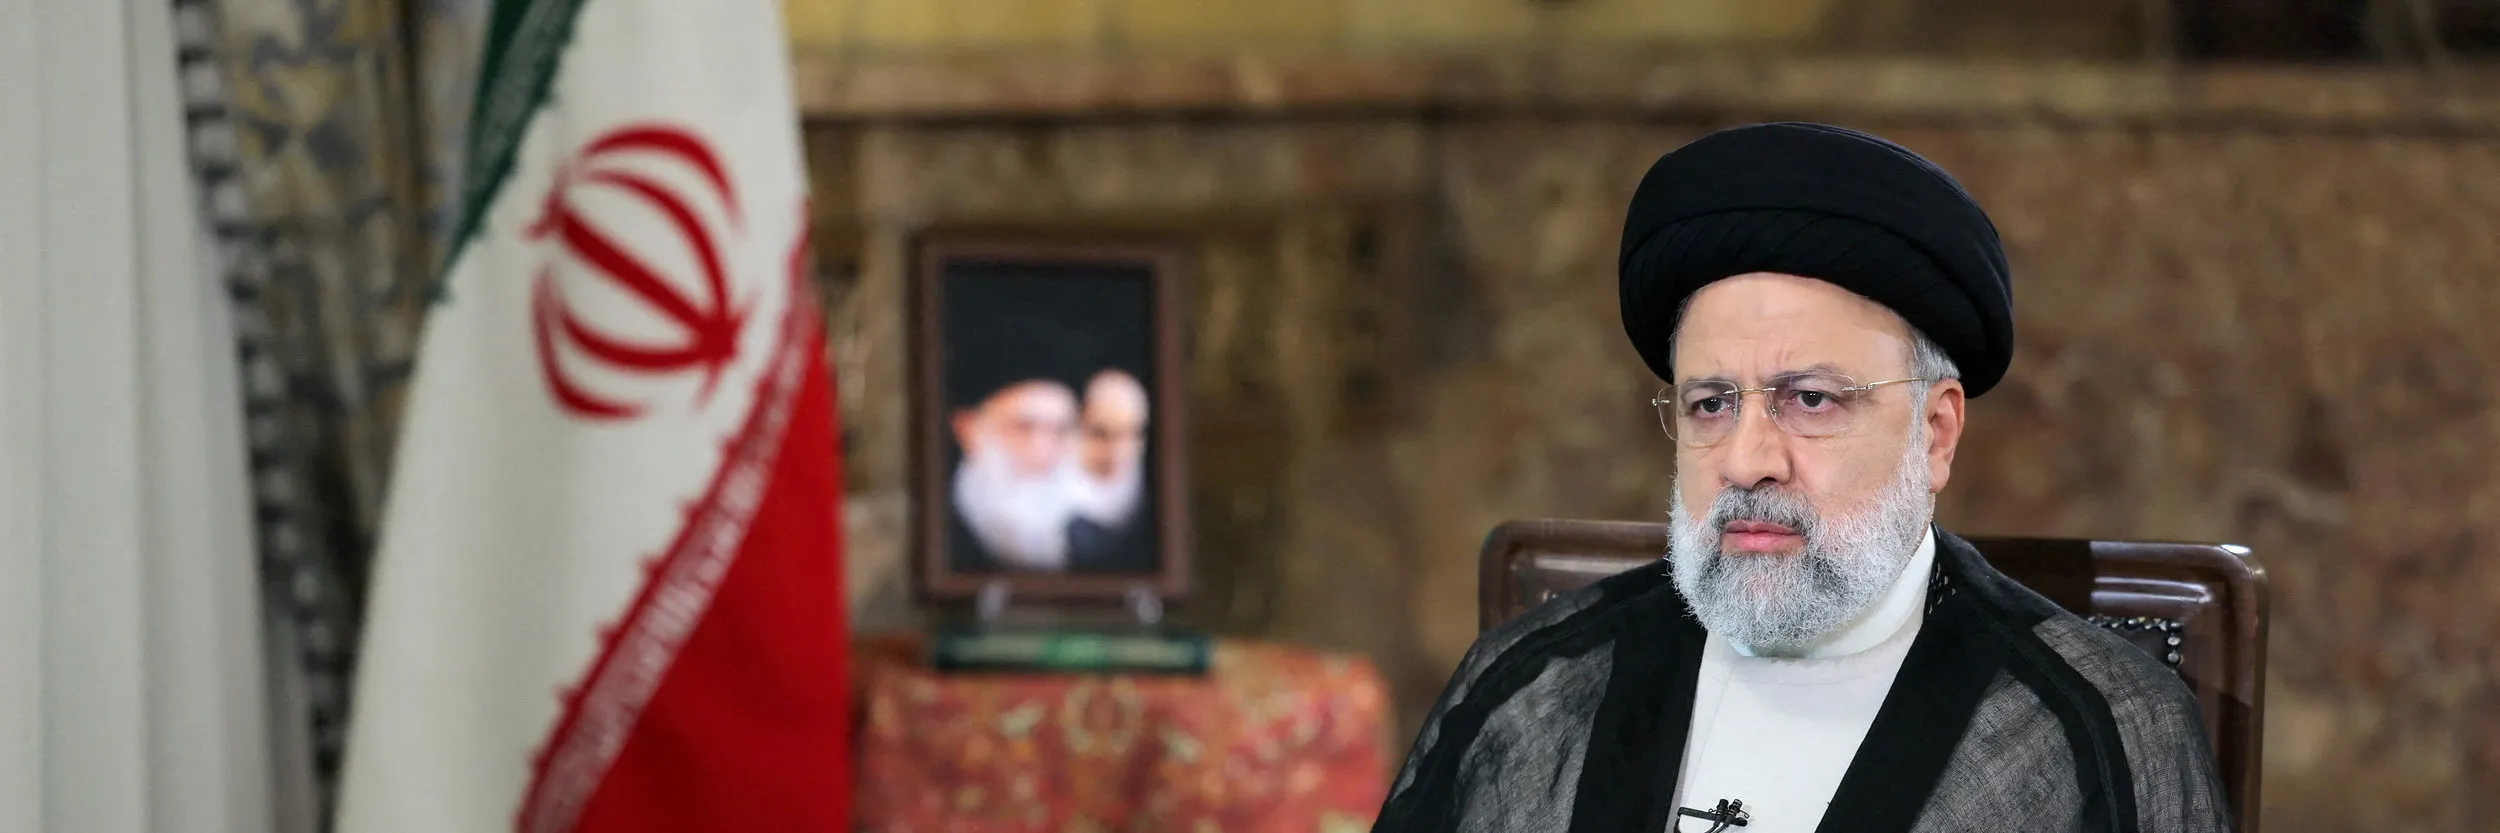 Vrtulník s íránským prezidentem havaroval. Informace jsou znepokojivé, řekl státní činitel